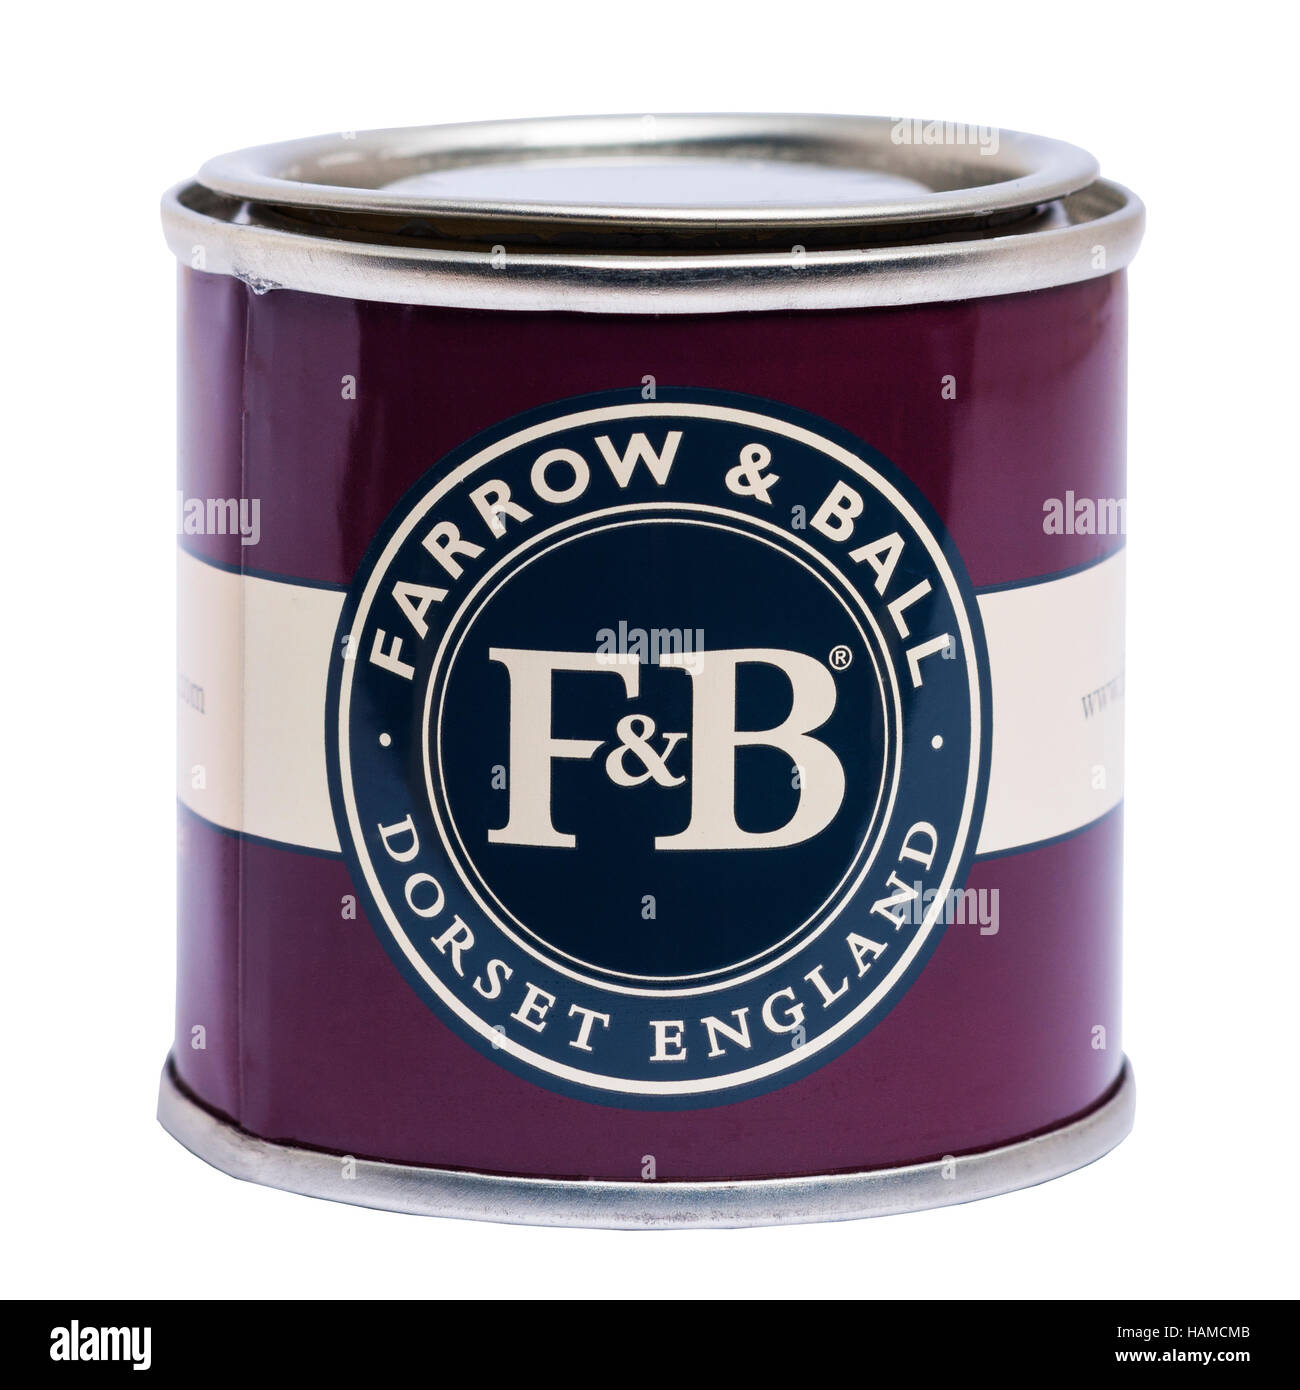 Une boîte de peinture Farrow & Ball sur un fond blanc Banque D'Images